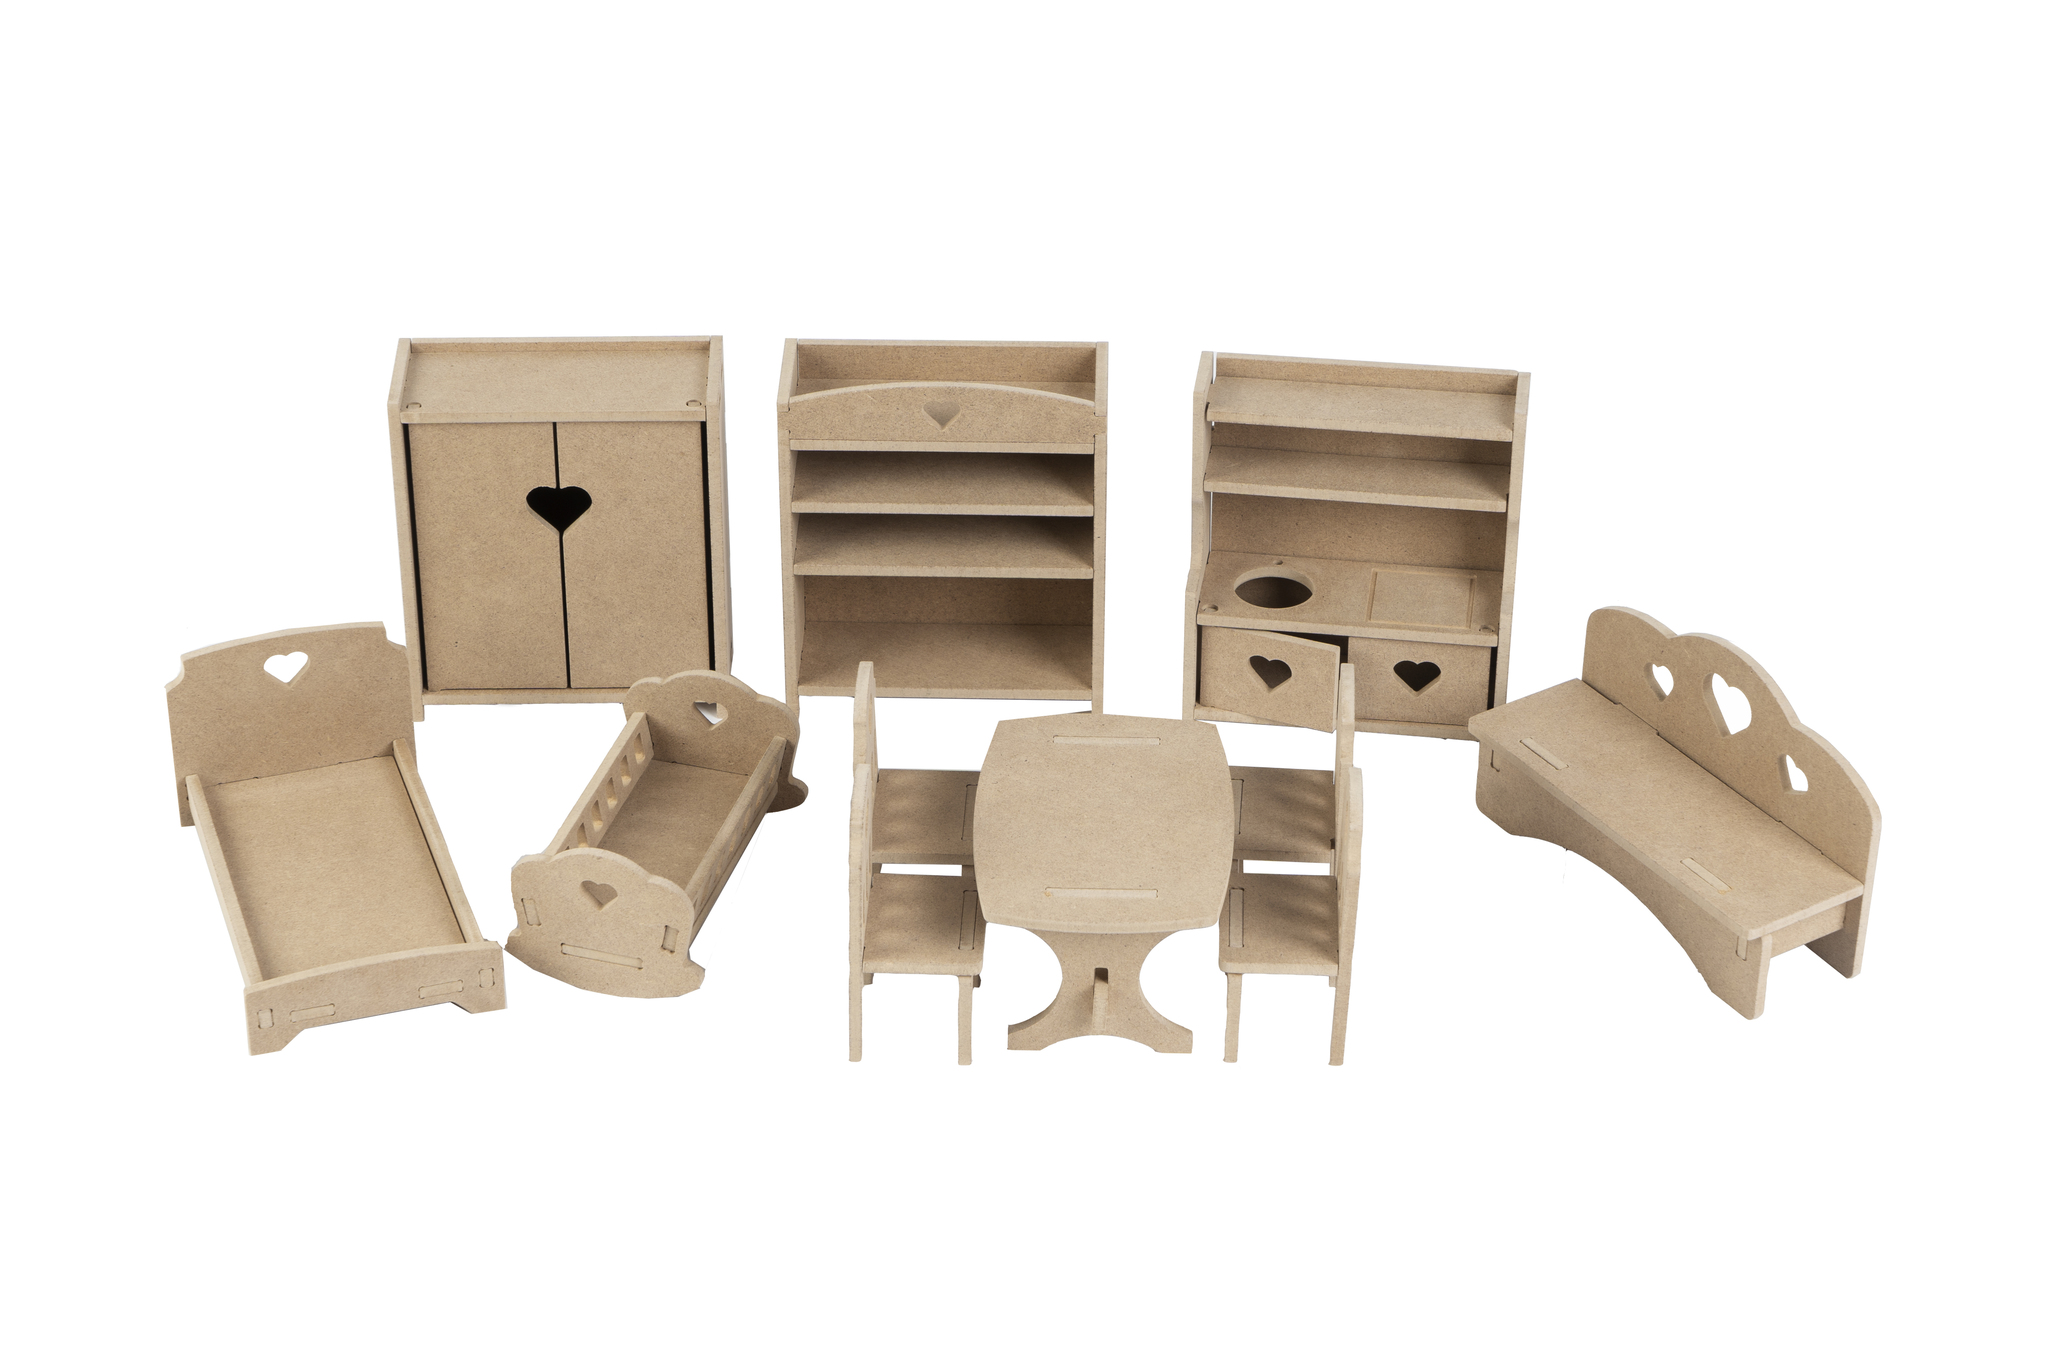 Кукольная мебель и игрушечная посуда для детей ИКЕА - IKEA